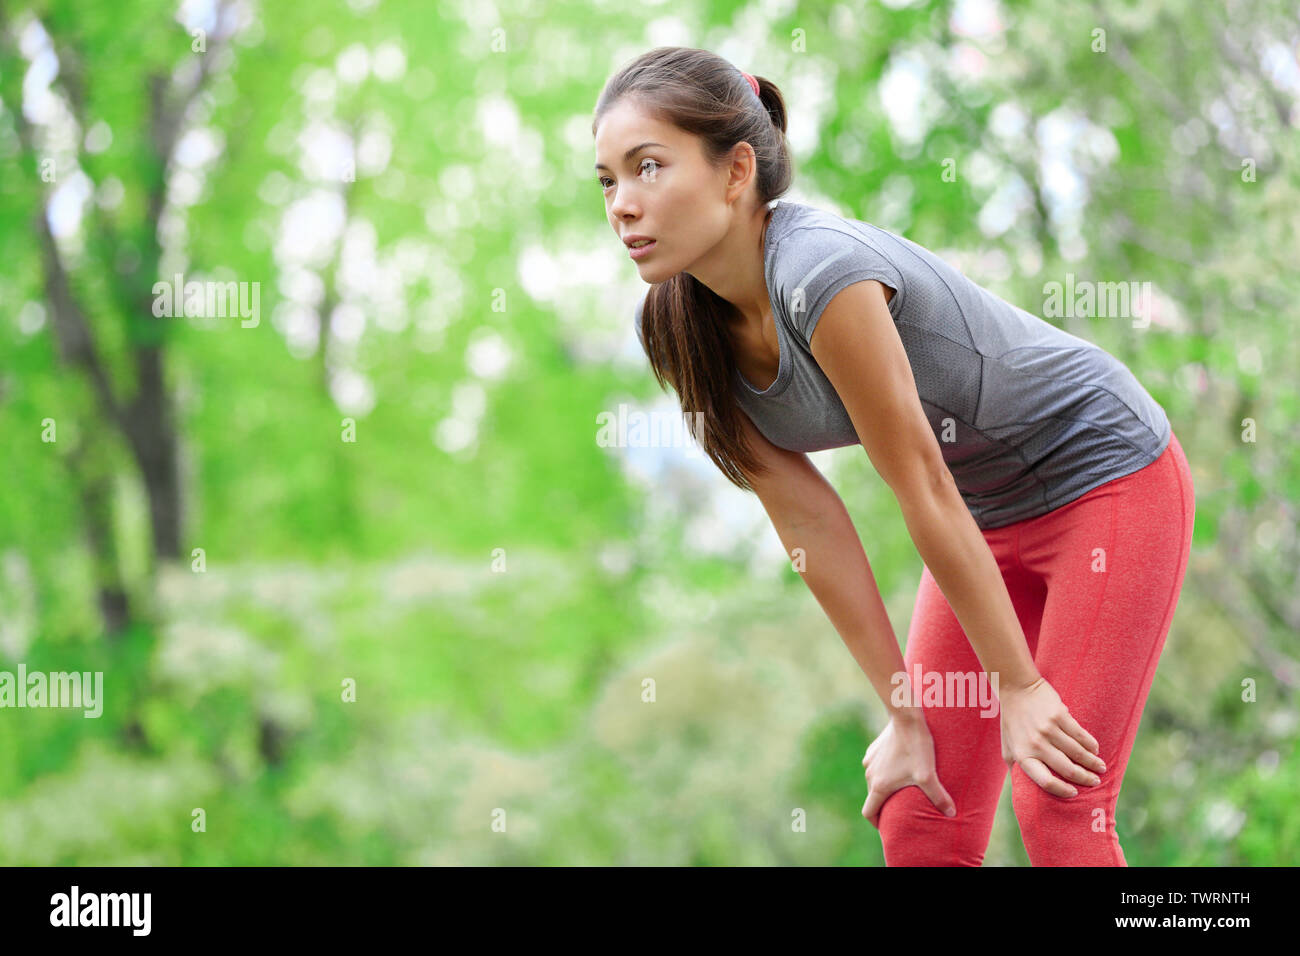 Femme Asiatique sportif runner se reposant après l'exécution de la formation et de la course à l'extérieur dans la forêt. Fatigué épuisé belle modèle fitness sport sain vivant une vie active. Mixed race caucasienne de l'Asie. Banque D'Images